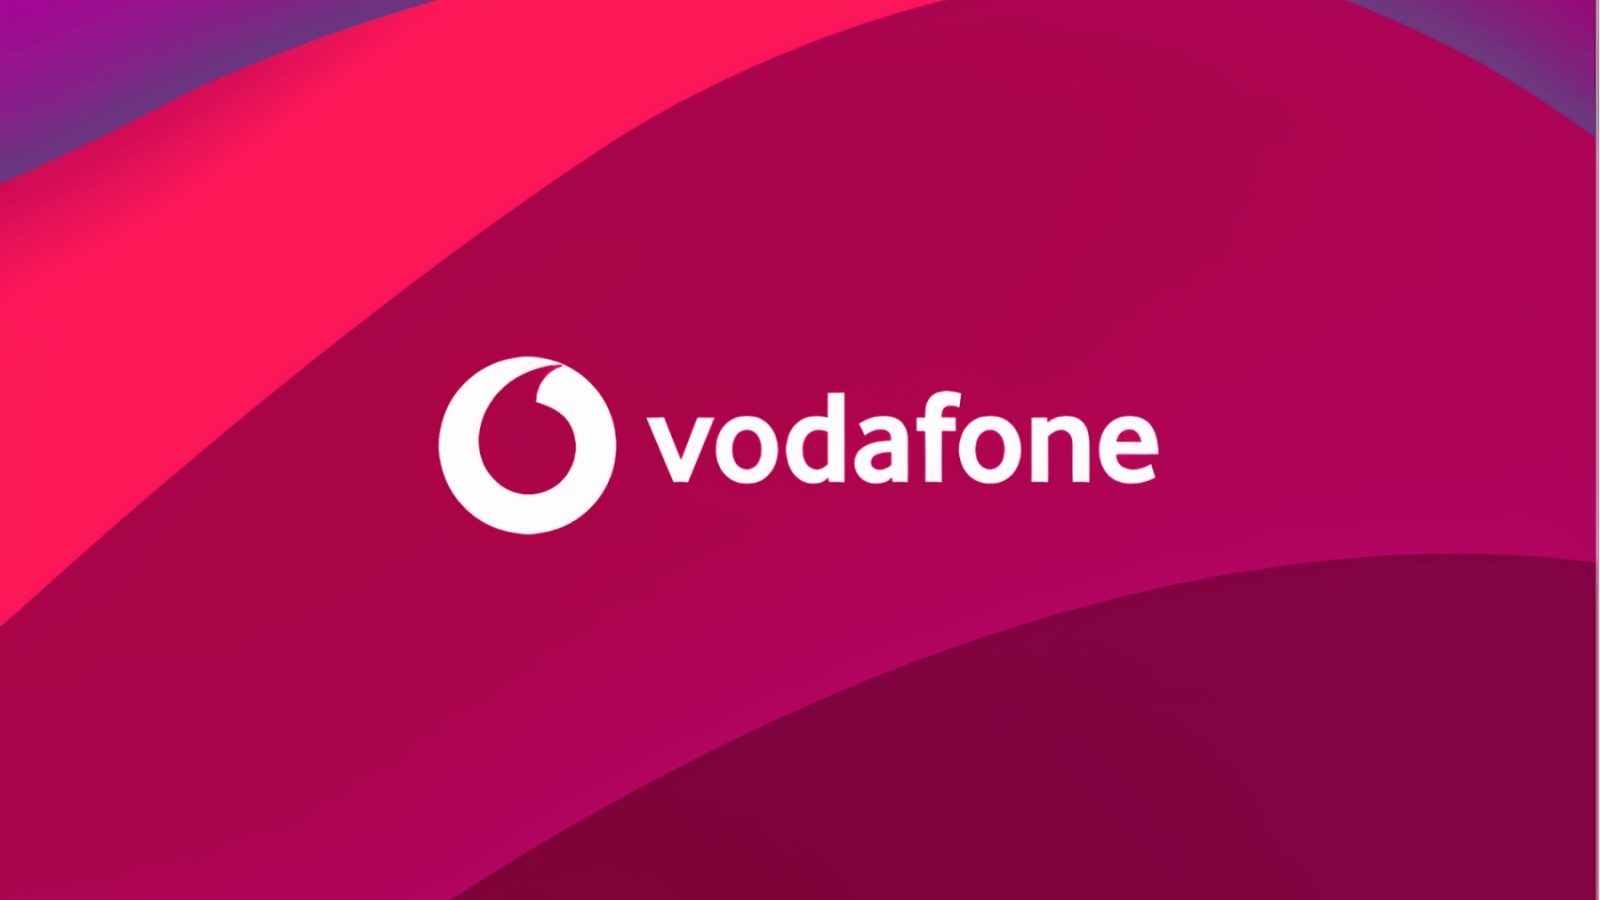 Vodafonen eksklusiivinen ilmoitus ILMAISILLE asiakkaille 2 vuoden ajan